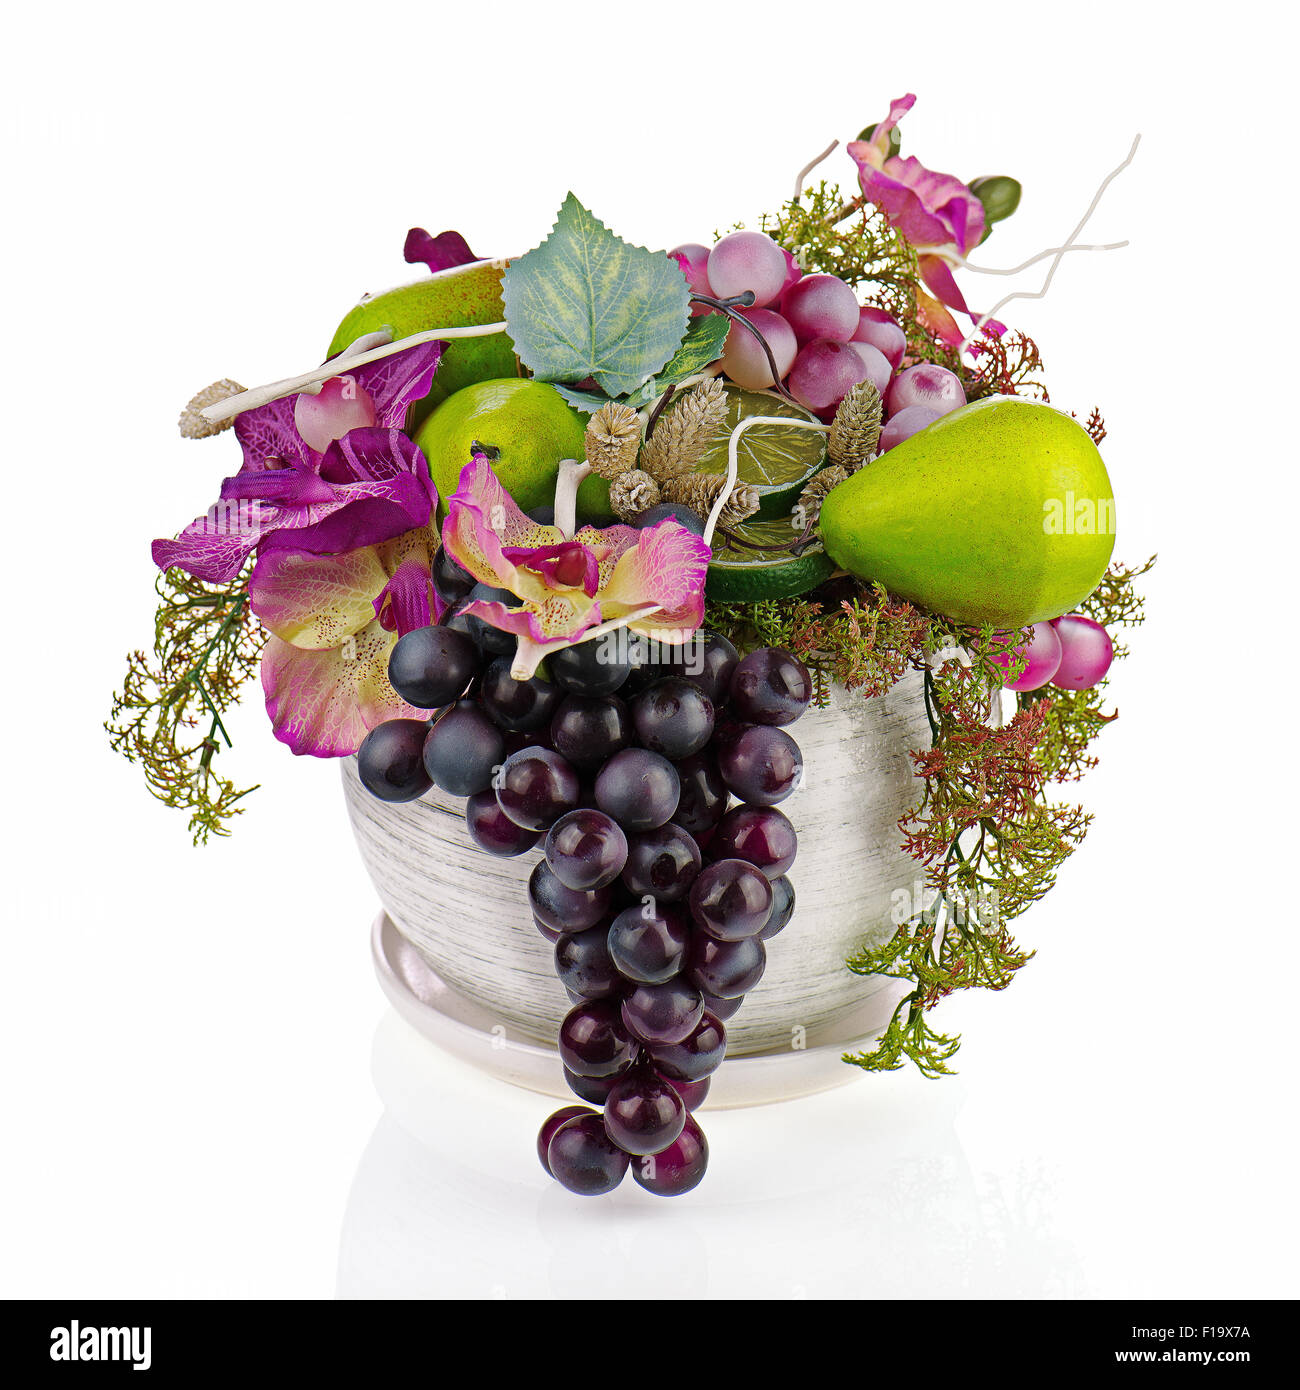 Composizione Colorata Fatta Di Fiori Artificiali E Di Frutti In Un Vecchio Vaso Di Vetro Isolato Su Sfondo Bianco Foto Stock Alamy